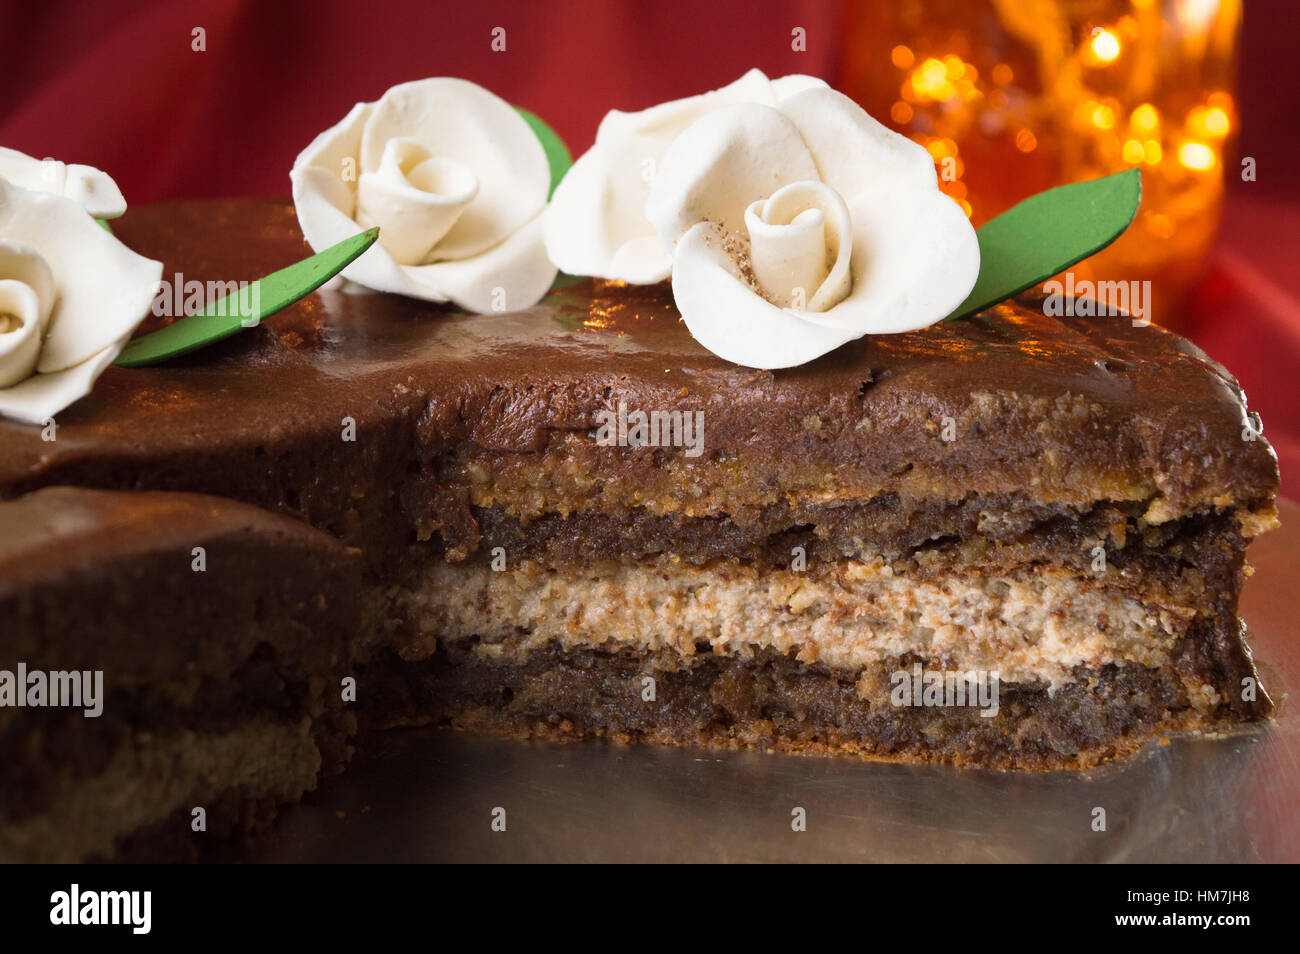 Tranches de gâteau au chocolat décoré de roses blanches comestibles Banque D'Images